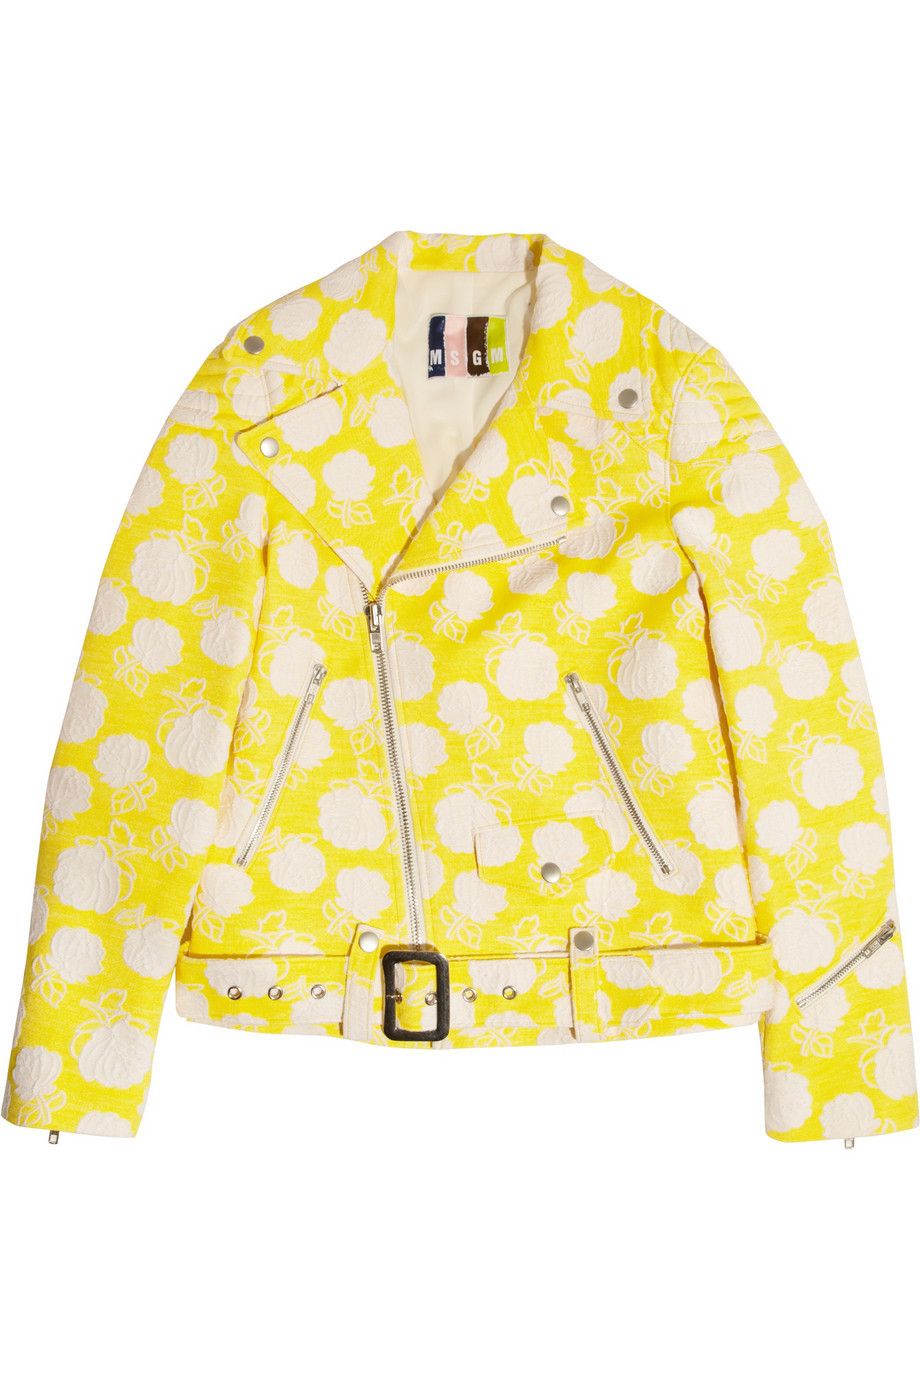 Yellow, Collar, Sleeve, Dress shirt, Pattern, Clothes hanger, Peach, Button, Pattern, Top, 